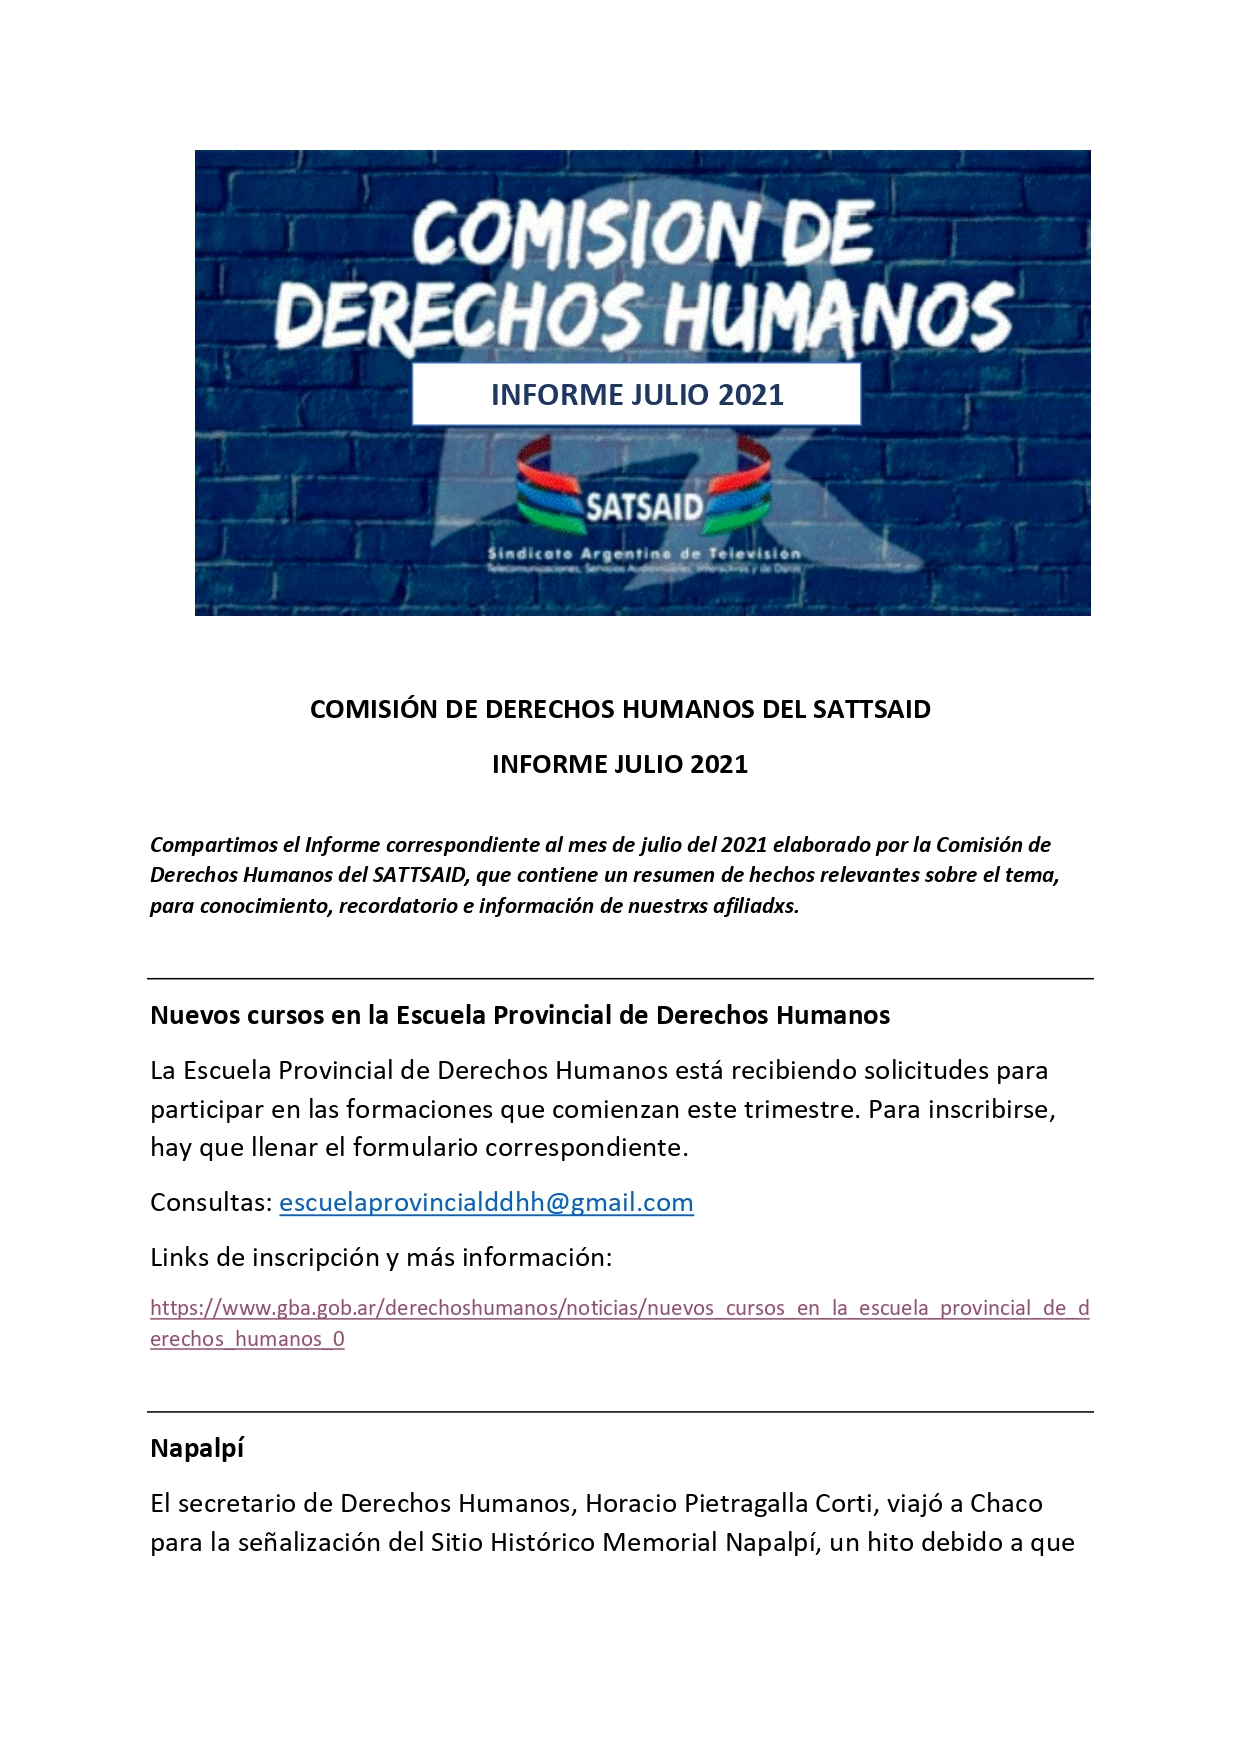 COMISIÓN DE DERECHOS HUMANOS DEL SATTSAID – INFORME JULIO 2021